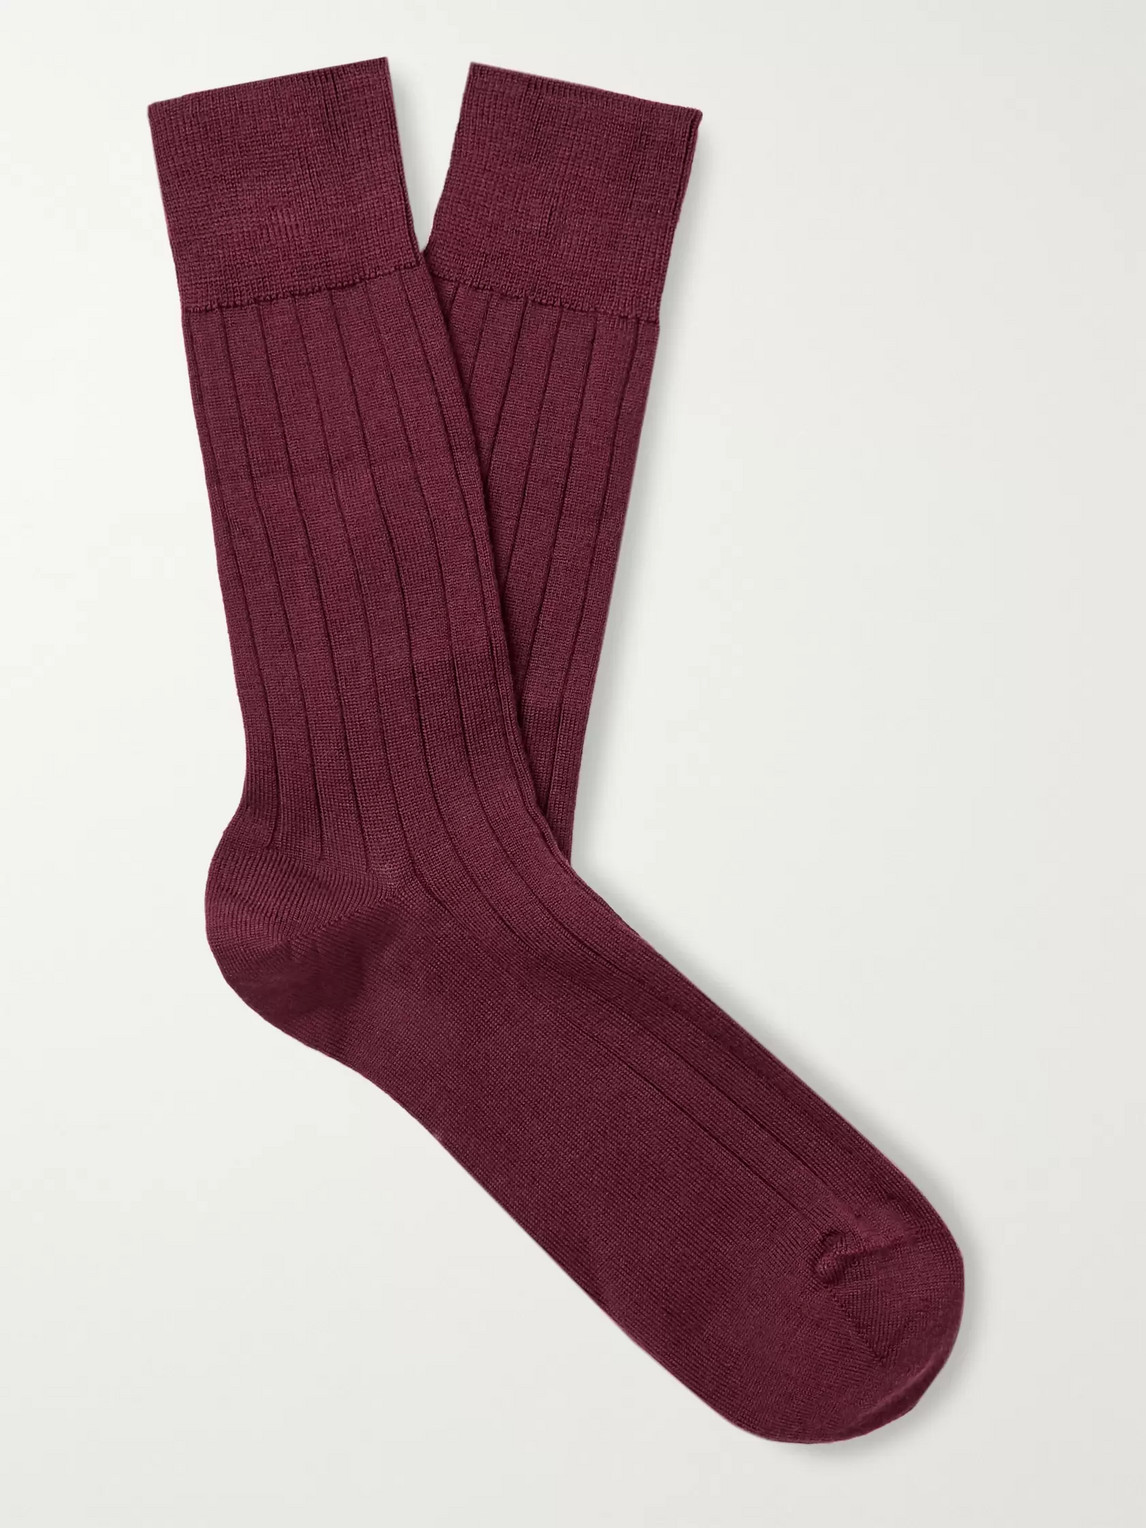 John Smedley Omega Merino Wool-blend Socks In Burgundy